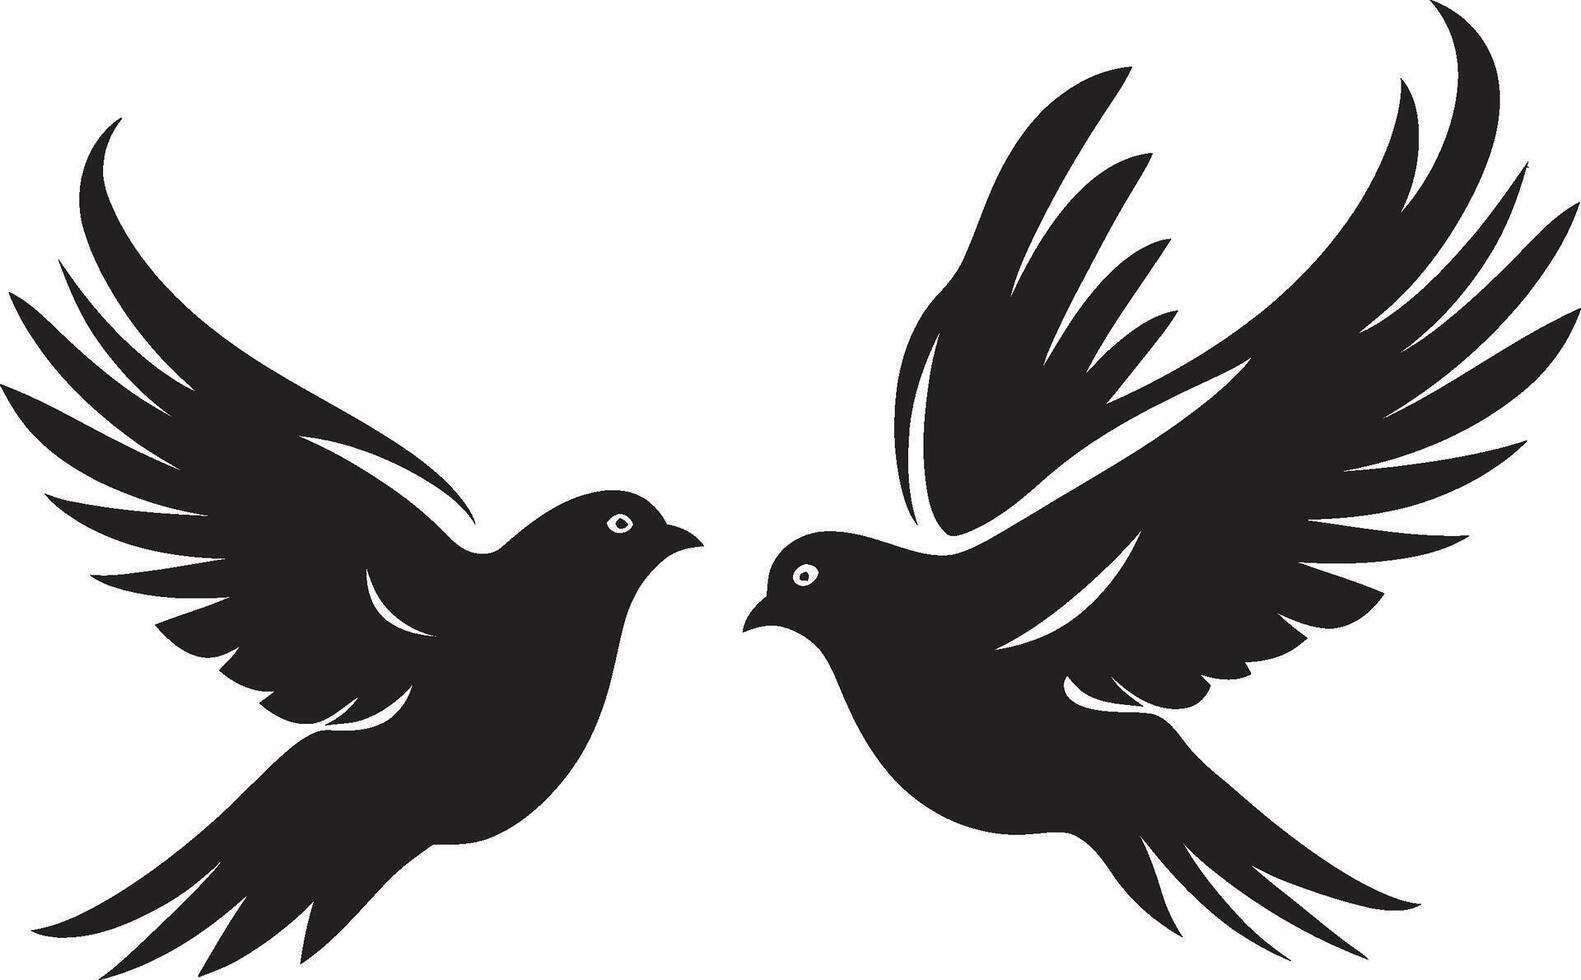 asas do unidade pomba par emblema simbólico serenidade do uma pomba par vetor